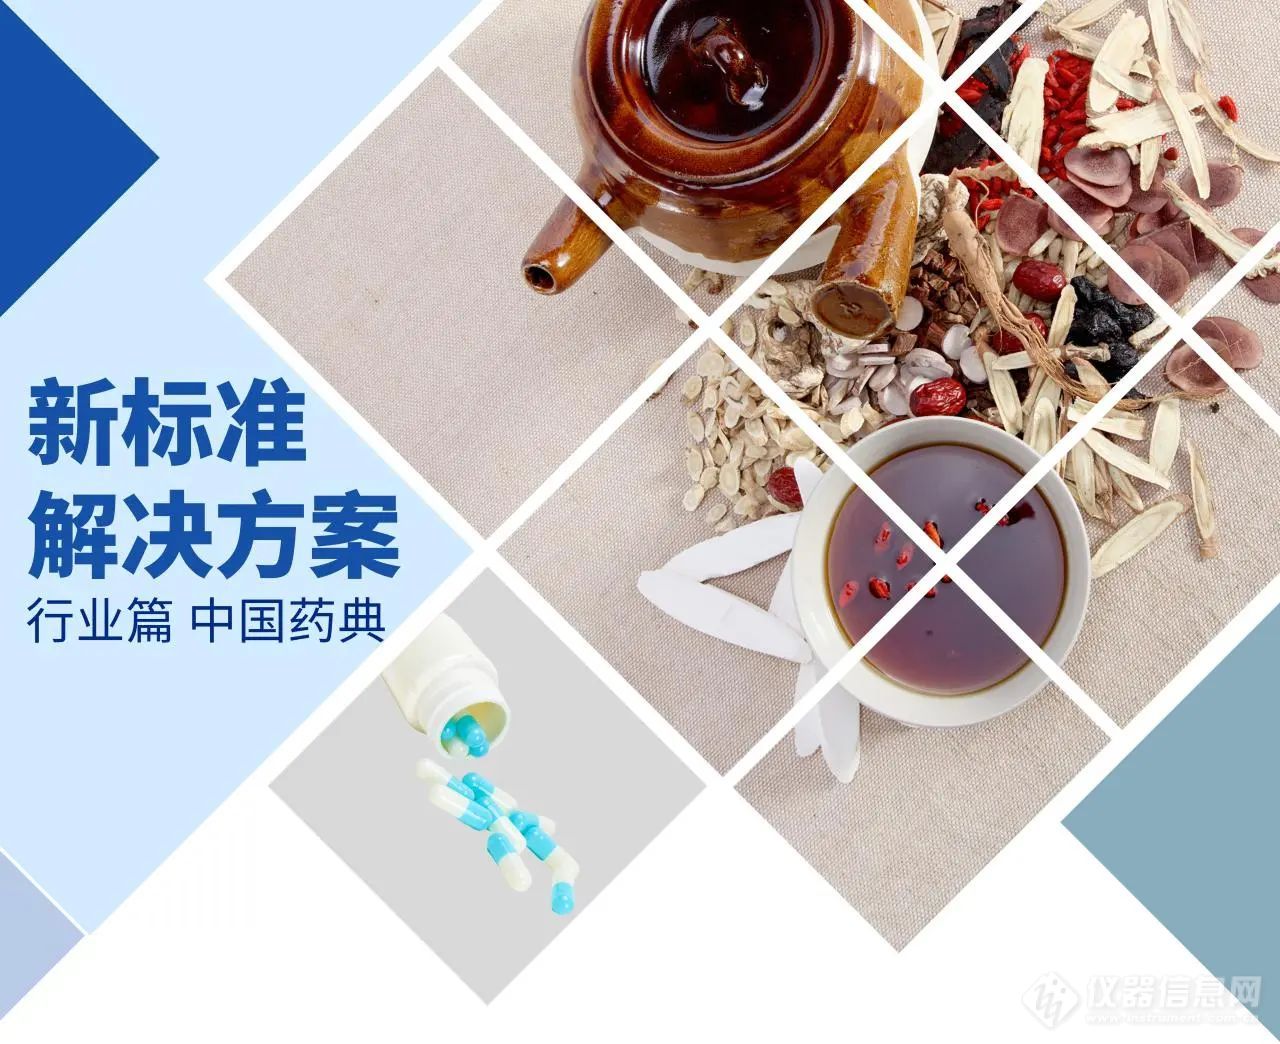 《中国药典》0431质谱法修订公示稿 一表简述质谱技术应用领域